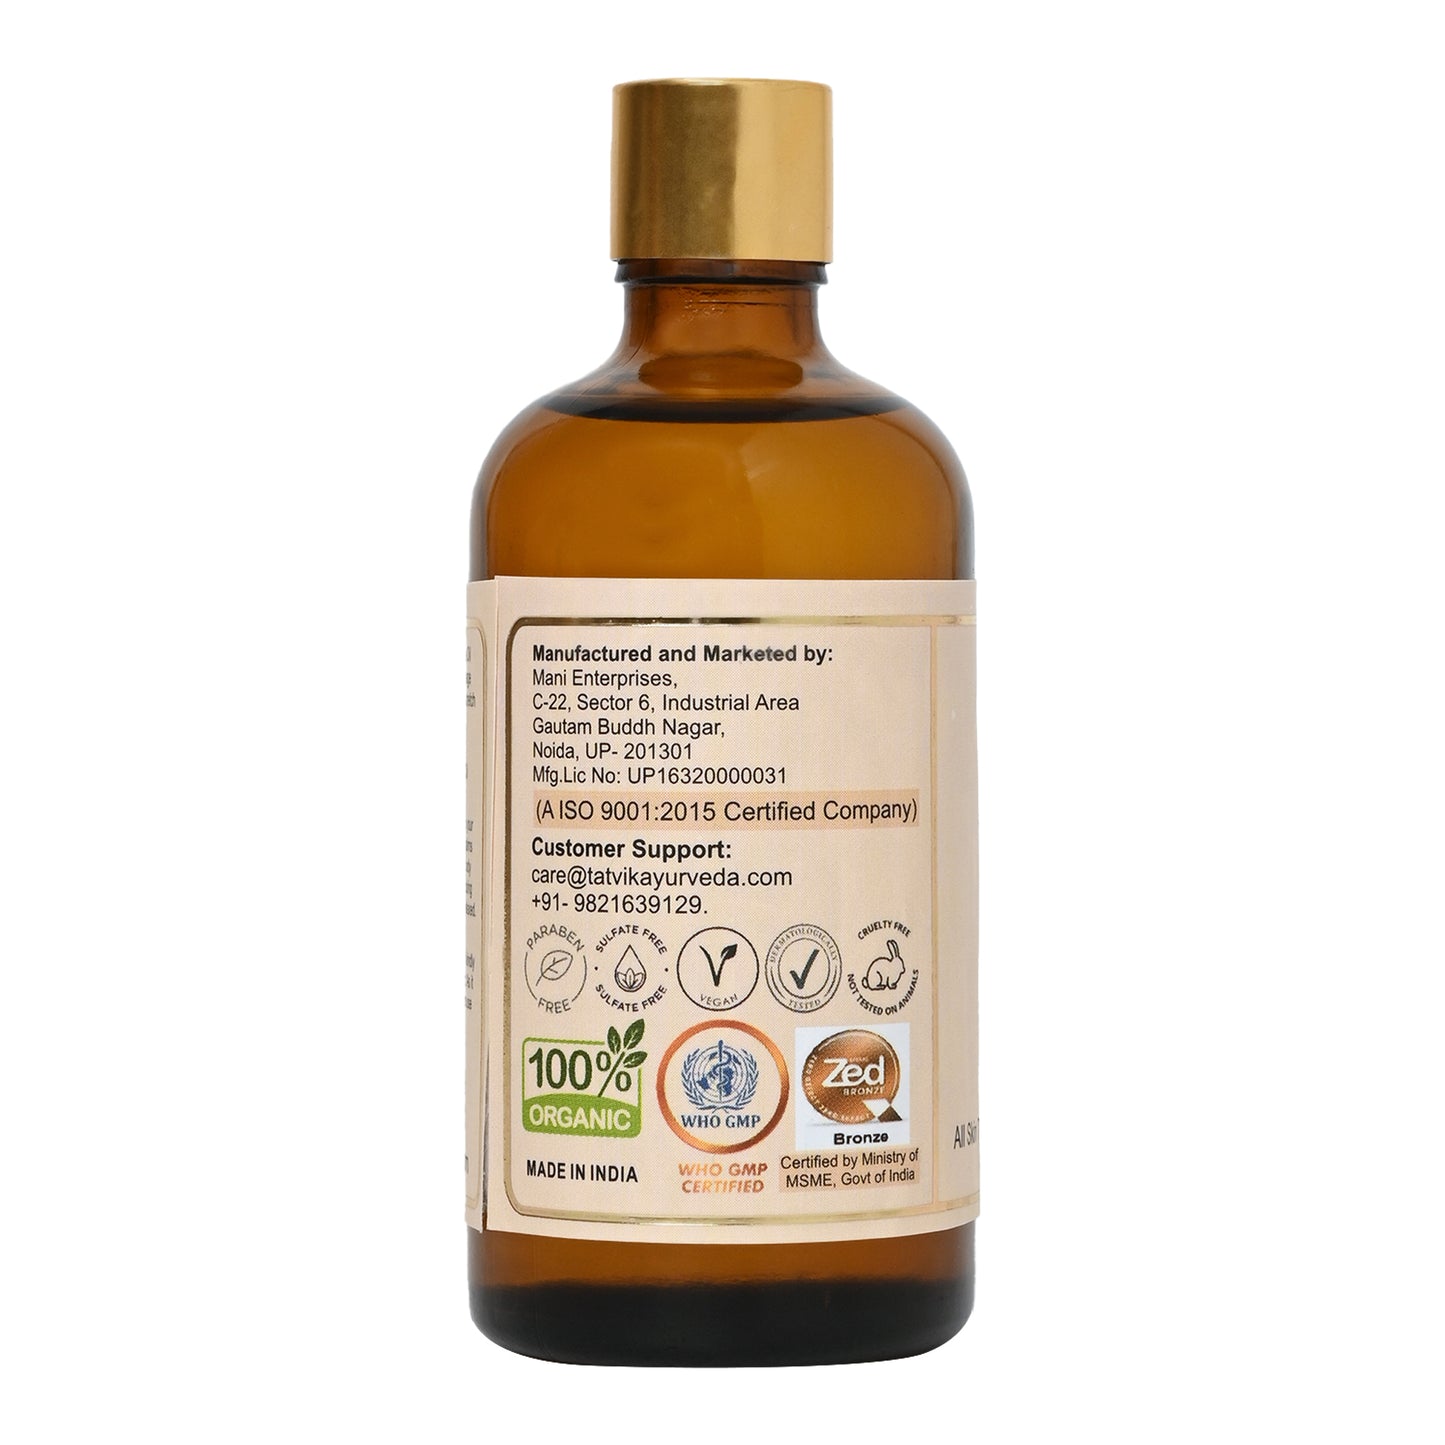 Prakrutisparsha Coffee & Ginger - Body Massage Oil